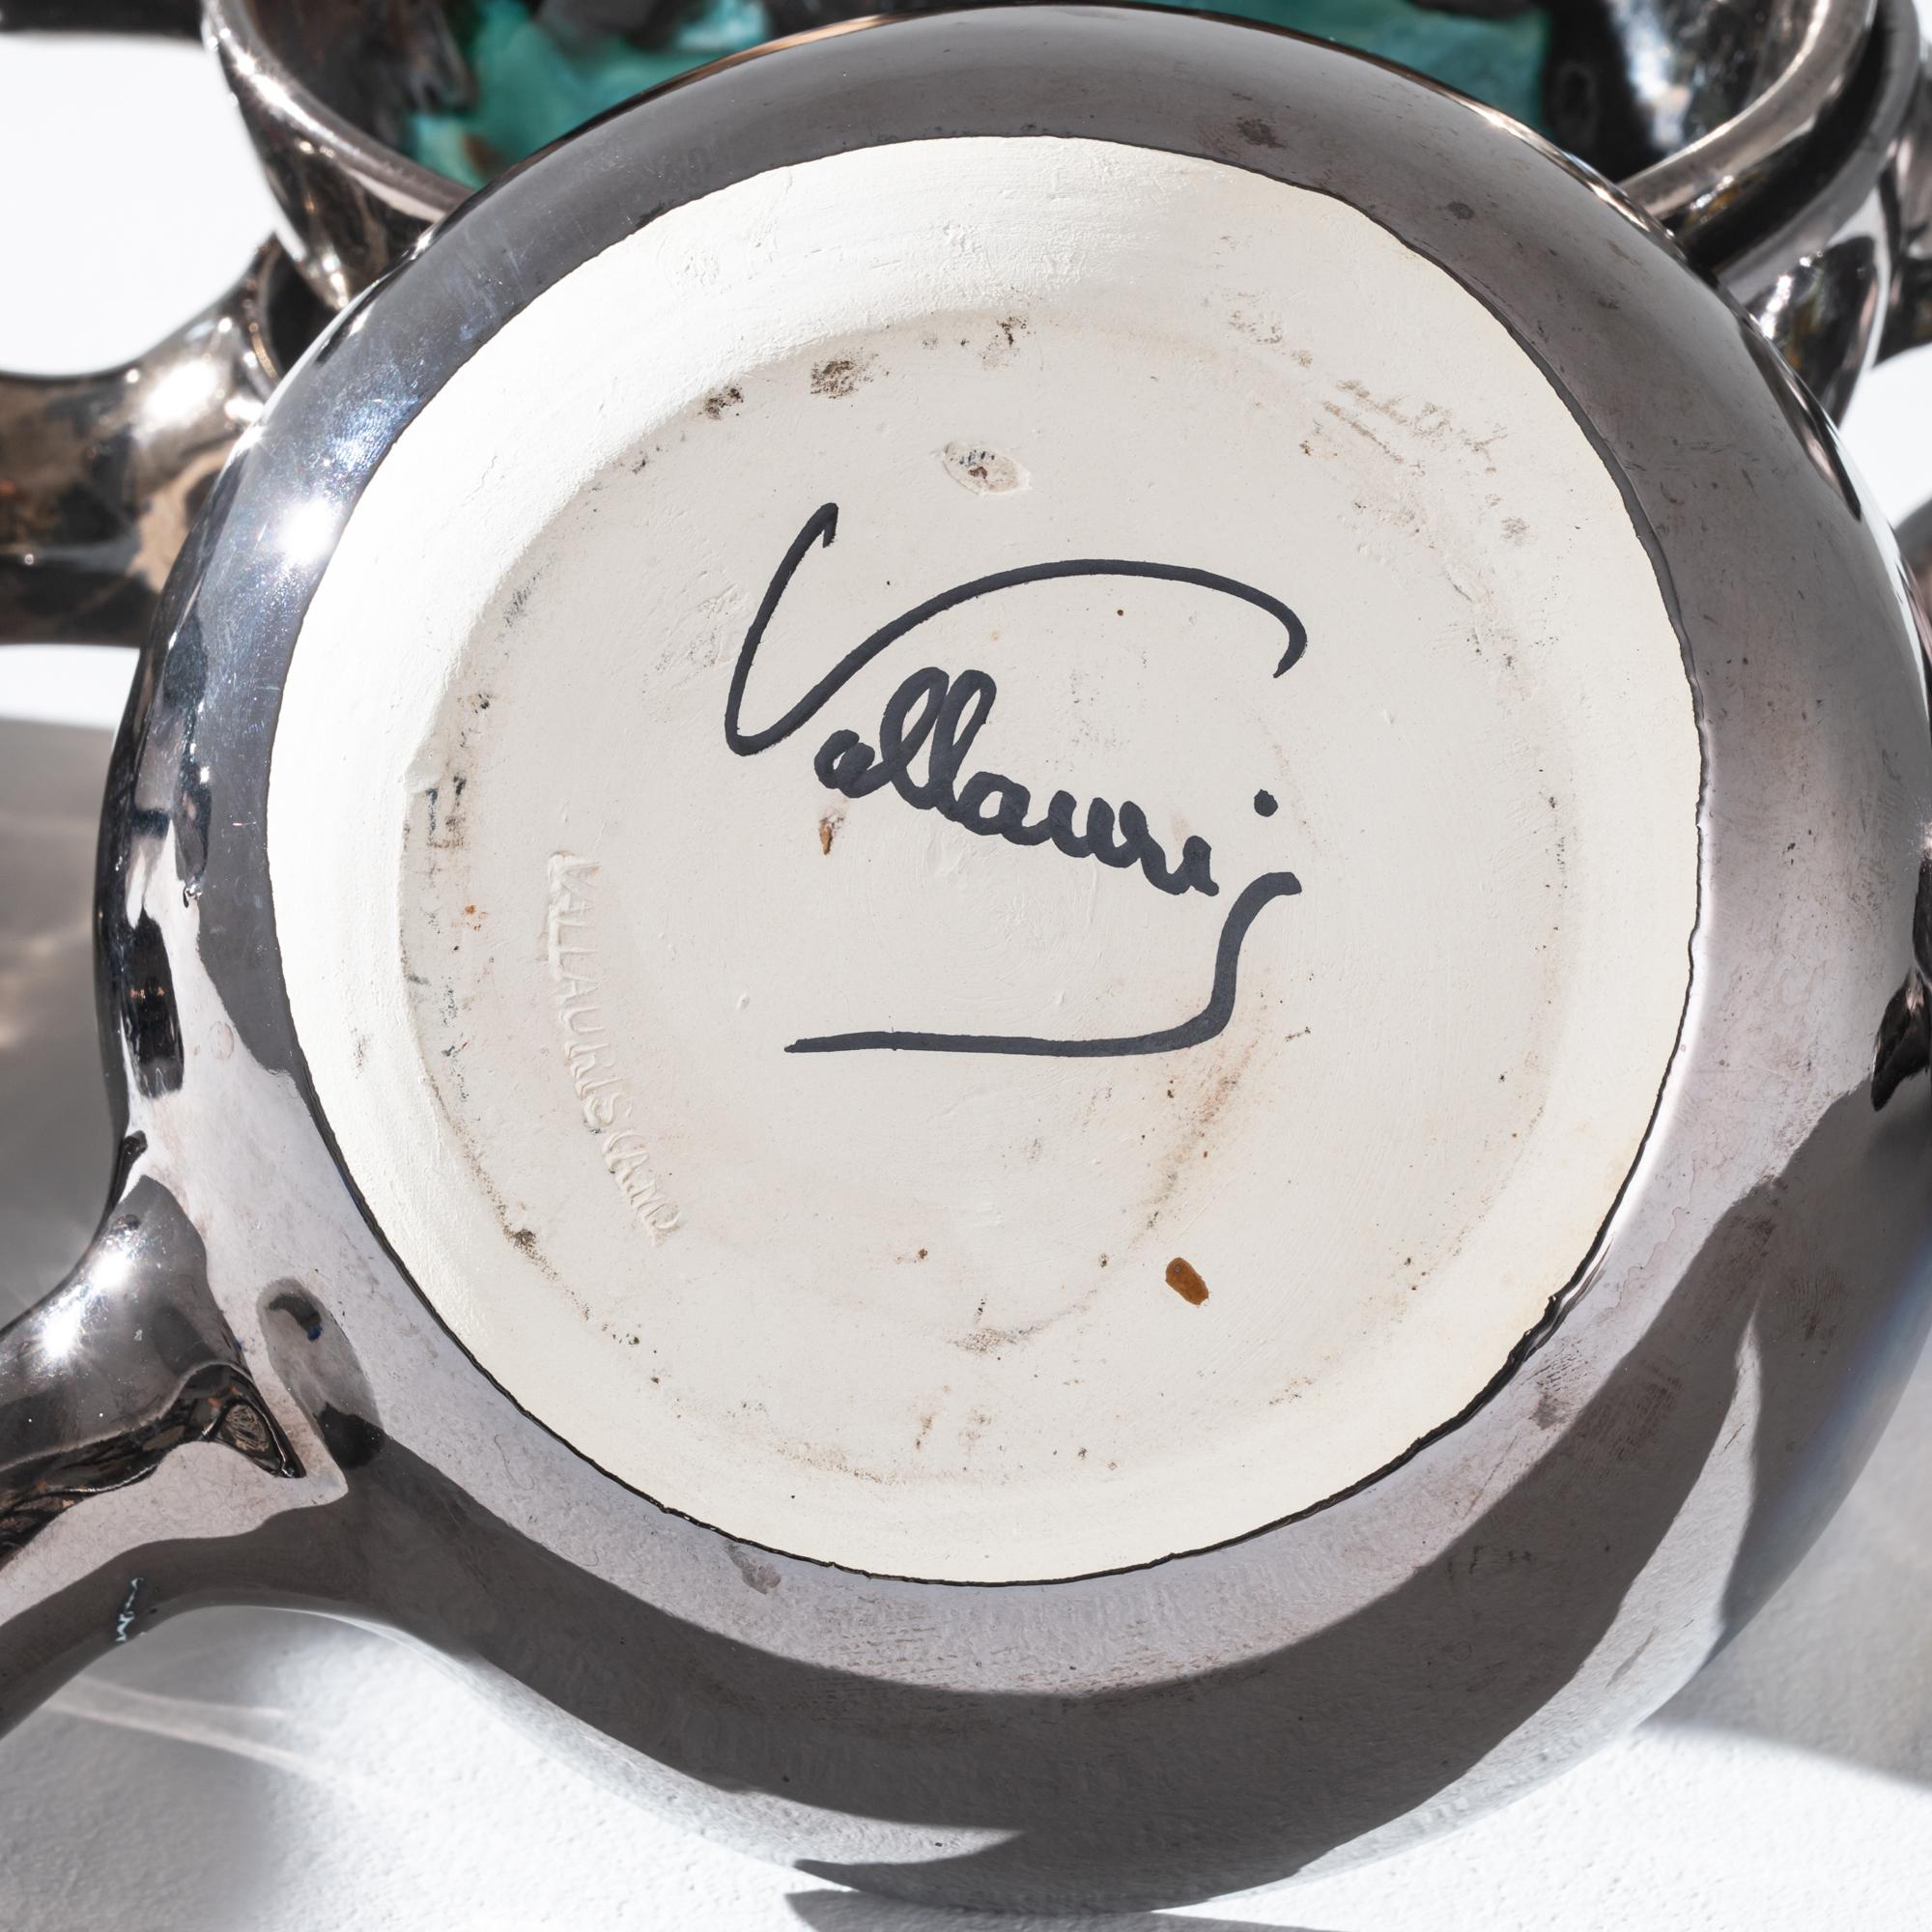 Ce superbe ensemble de vaisselle en céramique du 20e siècle représente une trouvaille unique. Une marque de potier peinte sur la base indique que ces pièces ont été fabriquées à Vallauris, une petite ville de la Côte d'Azur réputée pour ses belles